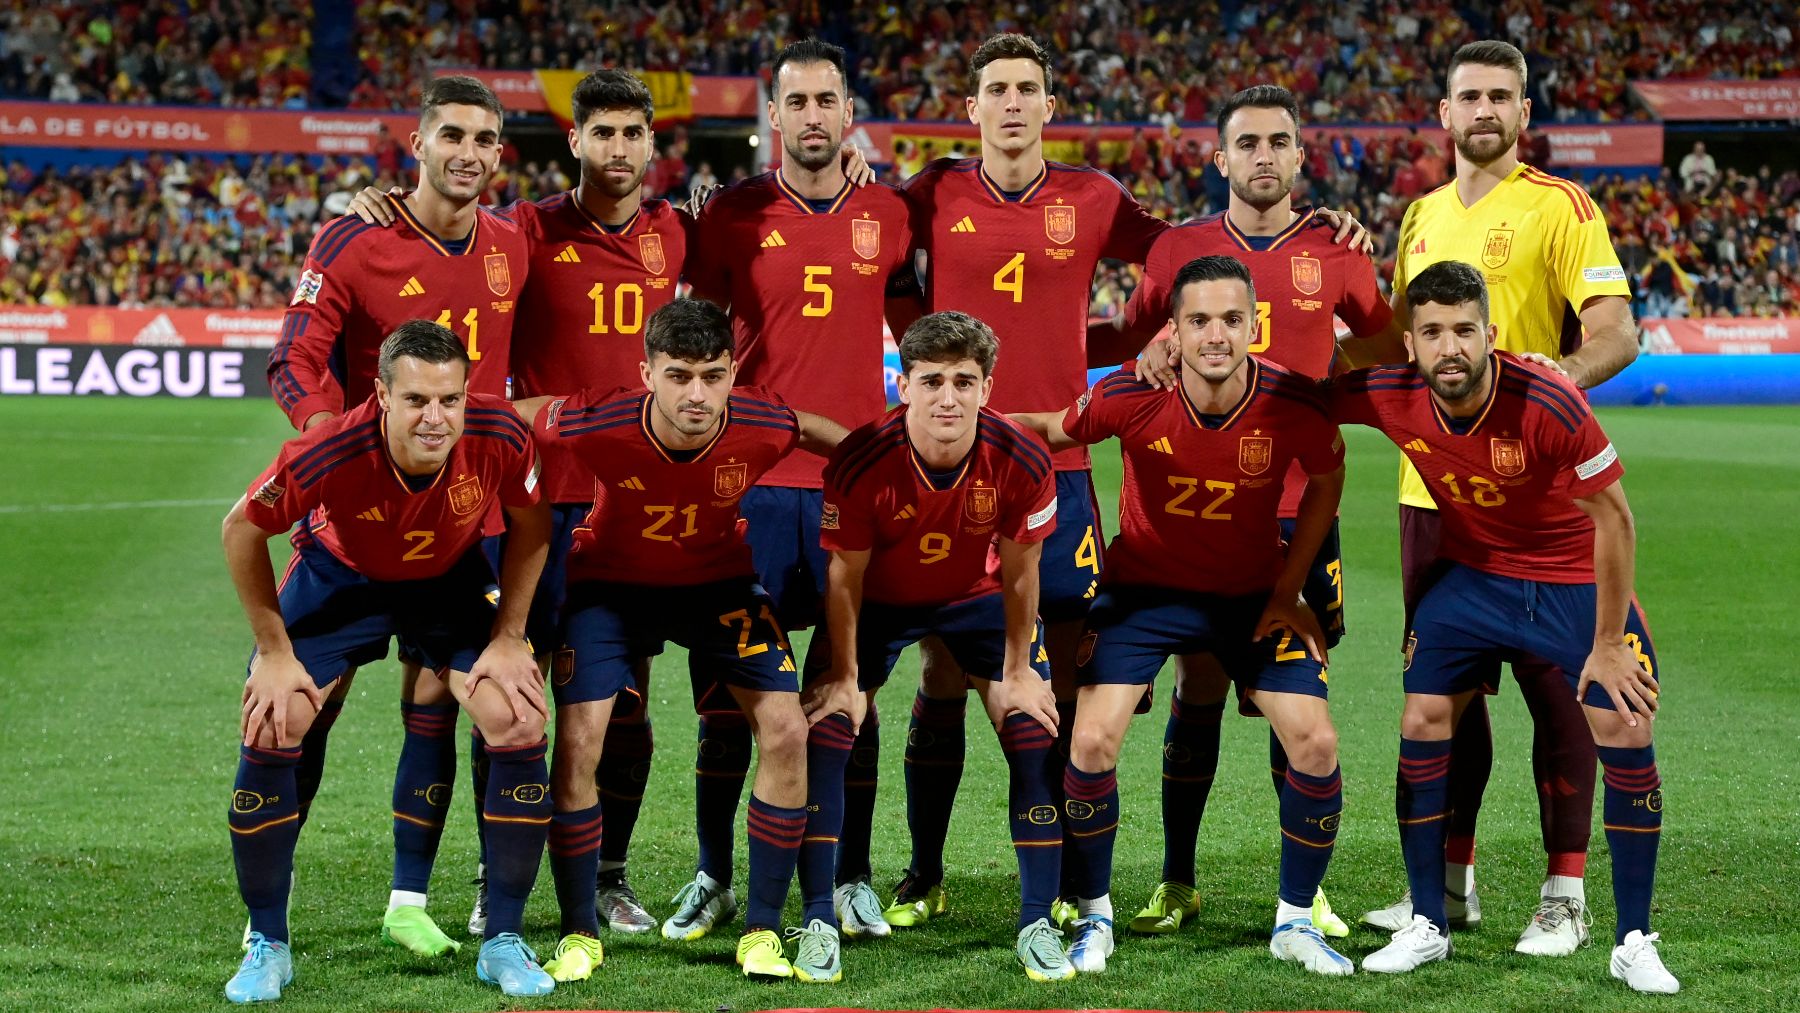 Seleccion española de futbol jugadores